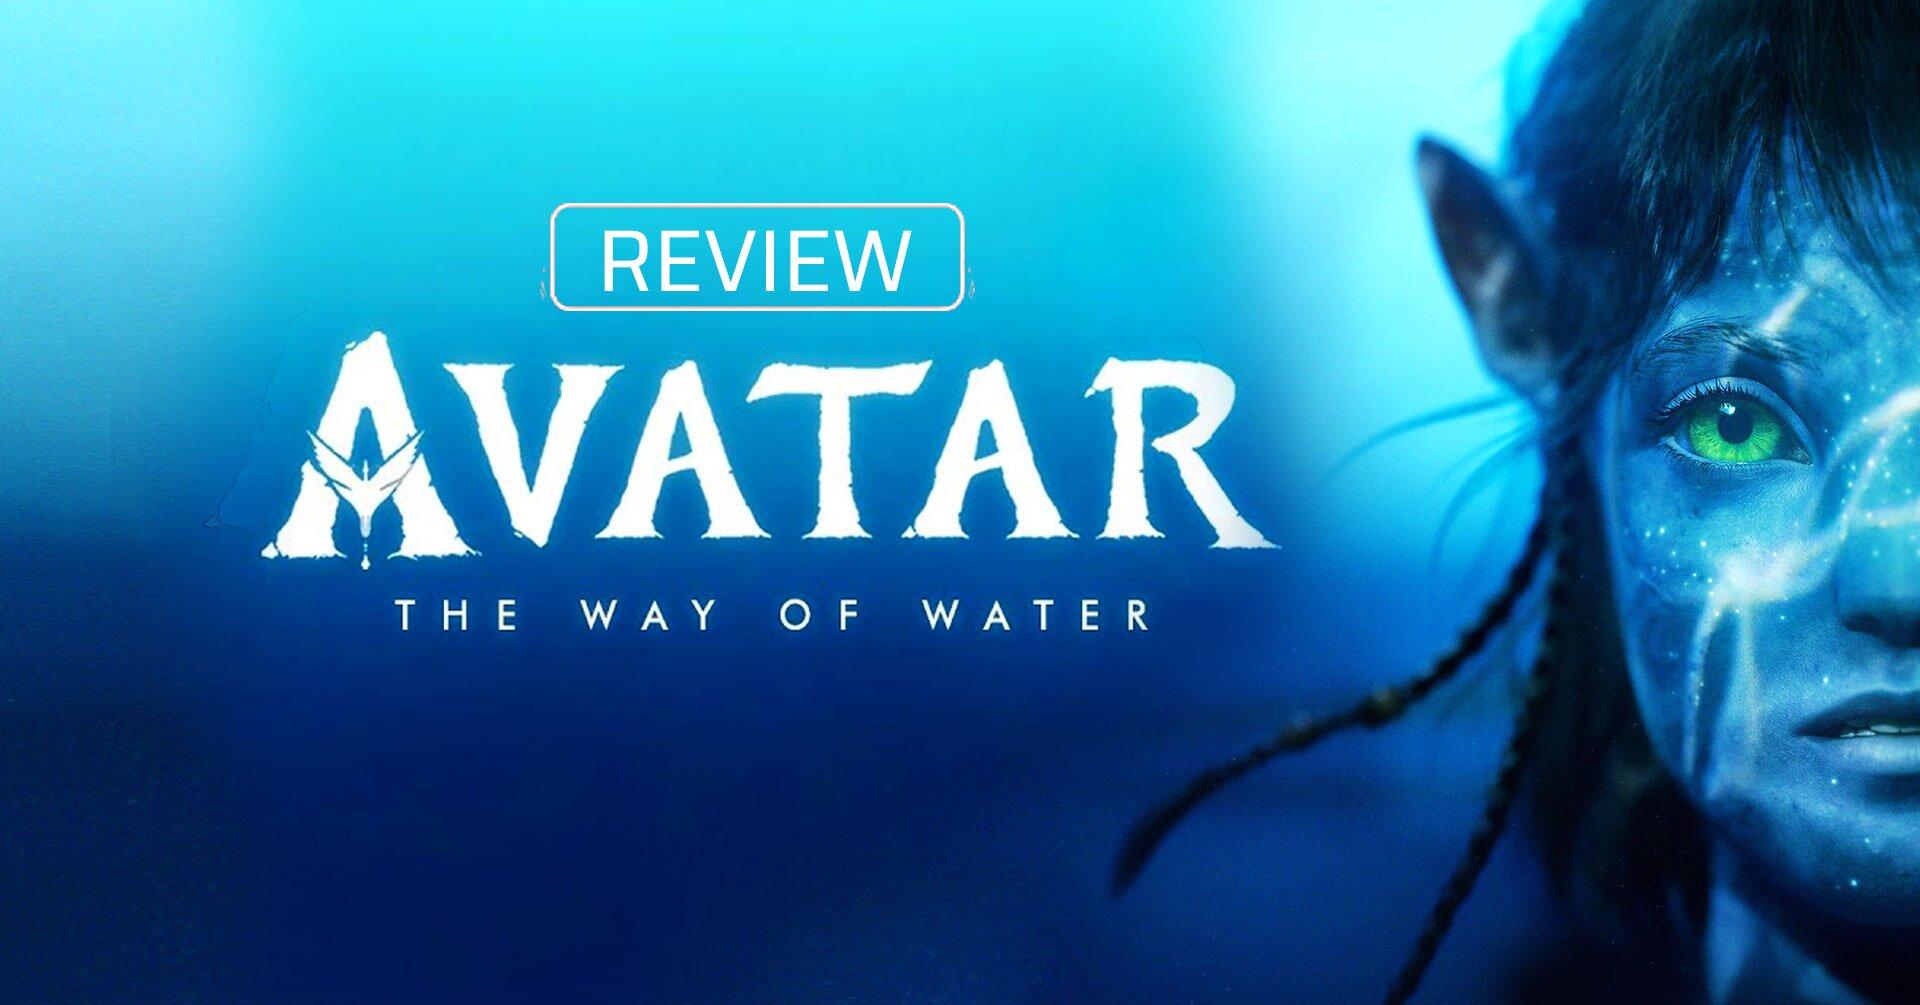 Review Avatar 2 The Way Of Water Phong Cách Phim Marvel Nhưng Là Màu Xanh Bloganchoi 3245